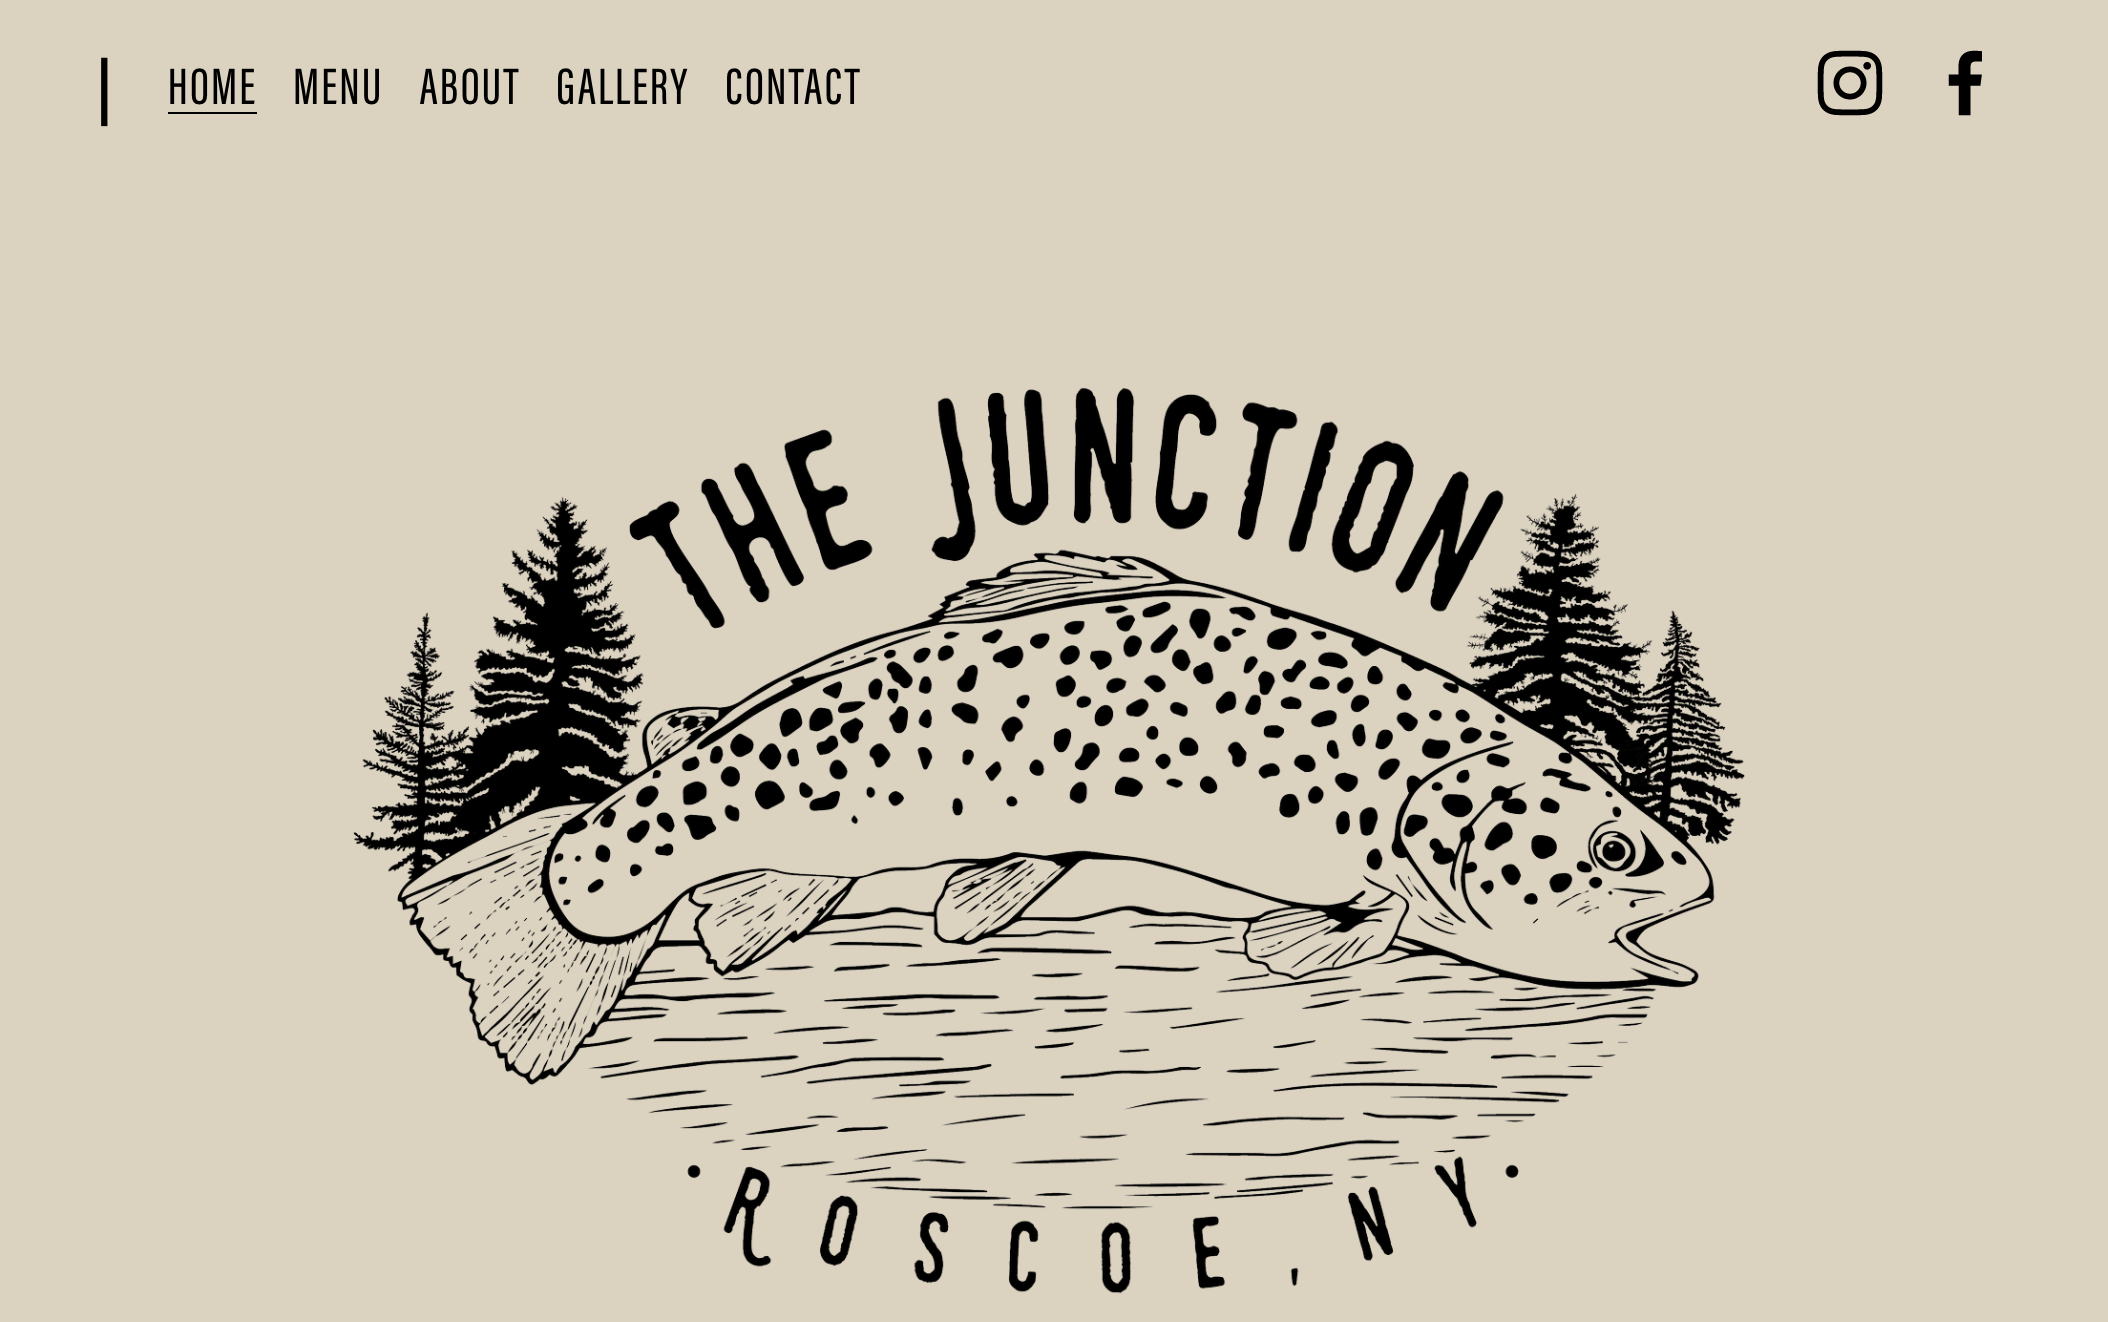 Website Design for The Junction Roscoe